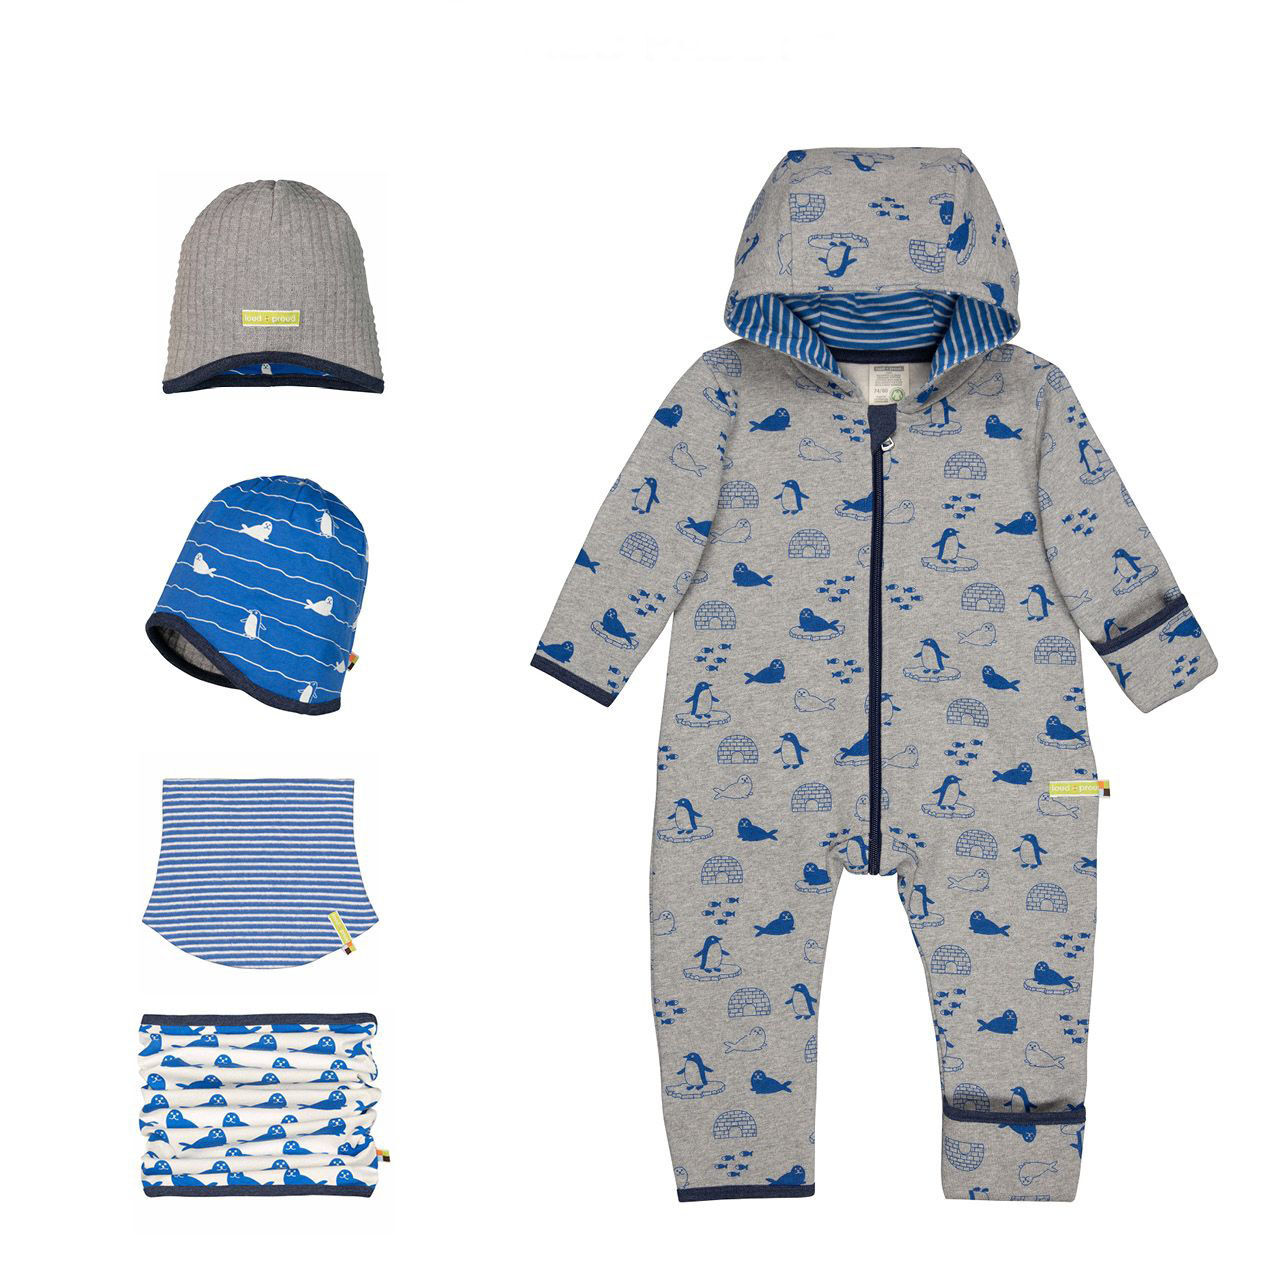 Téli Designer gyerekruha kollekció ötlet kék-szürke